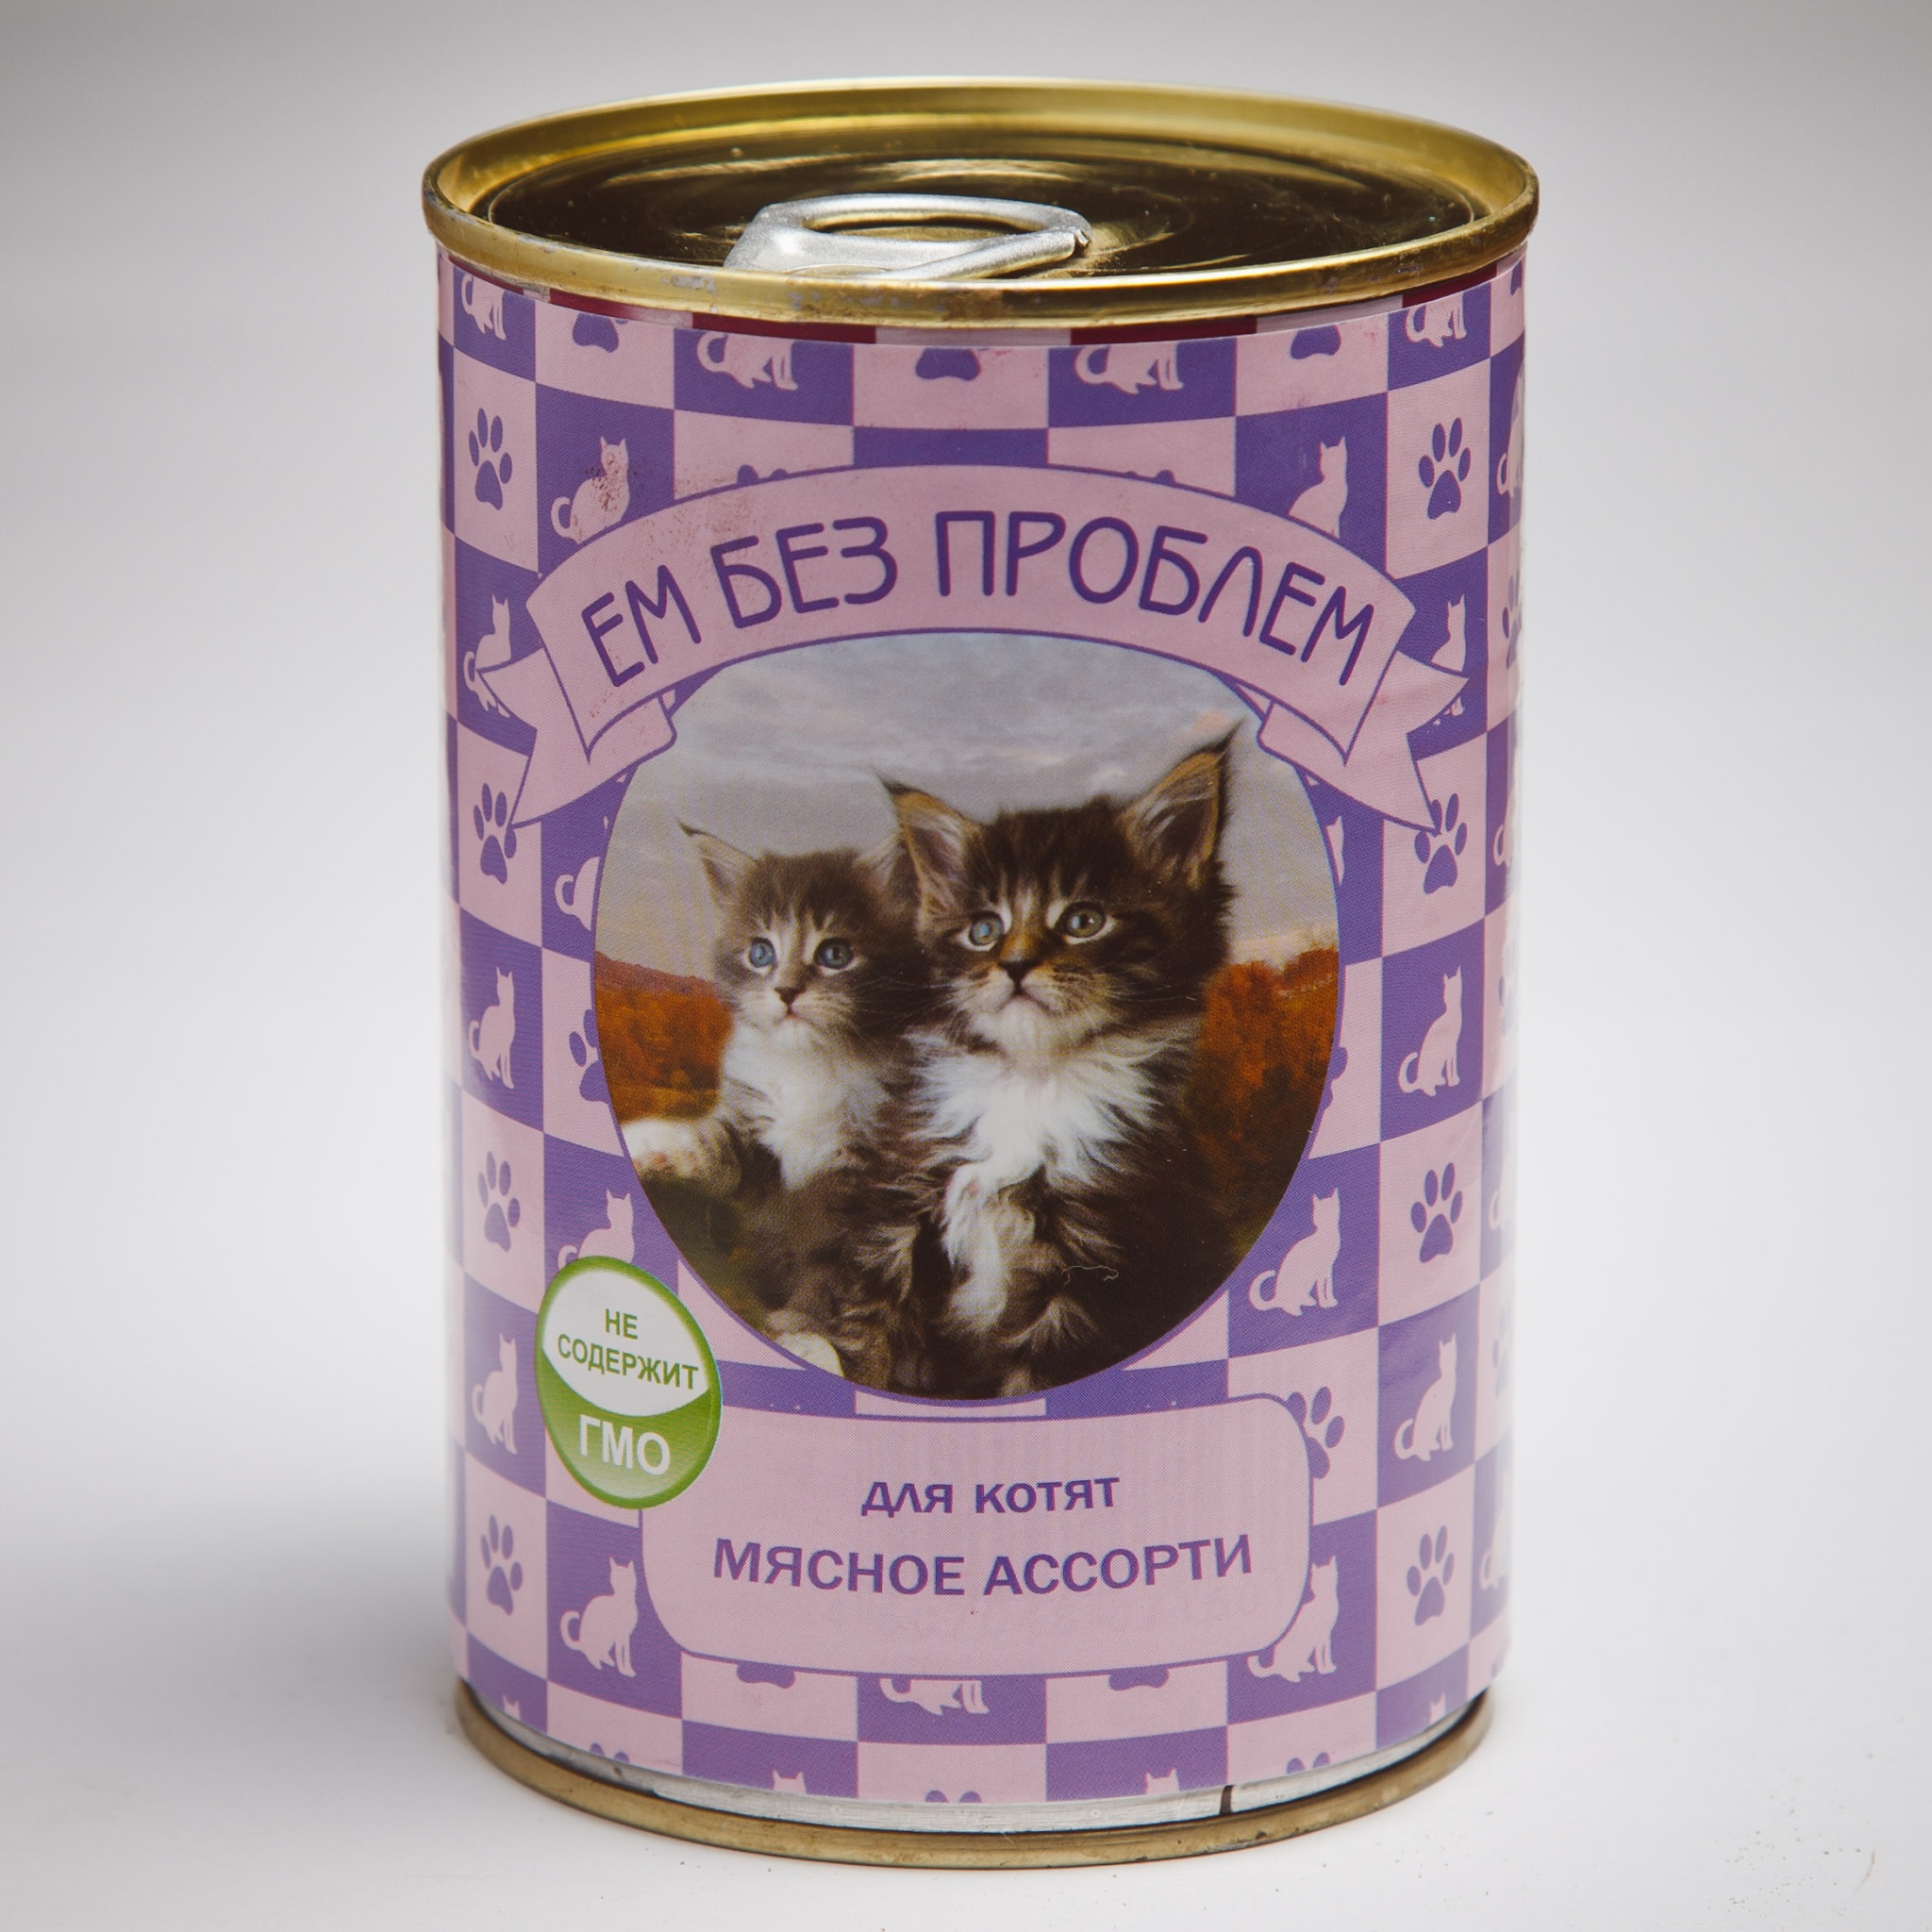 Купить влажный корм для кошек в спб. Корм влажный Tafi для собак мясное ассорти 415 г. Корм ем без проблем для котят мясное ассорти. Кошачьи консервы. Корм для кошек для котят.